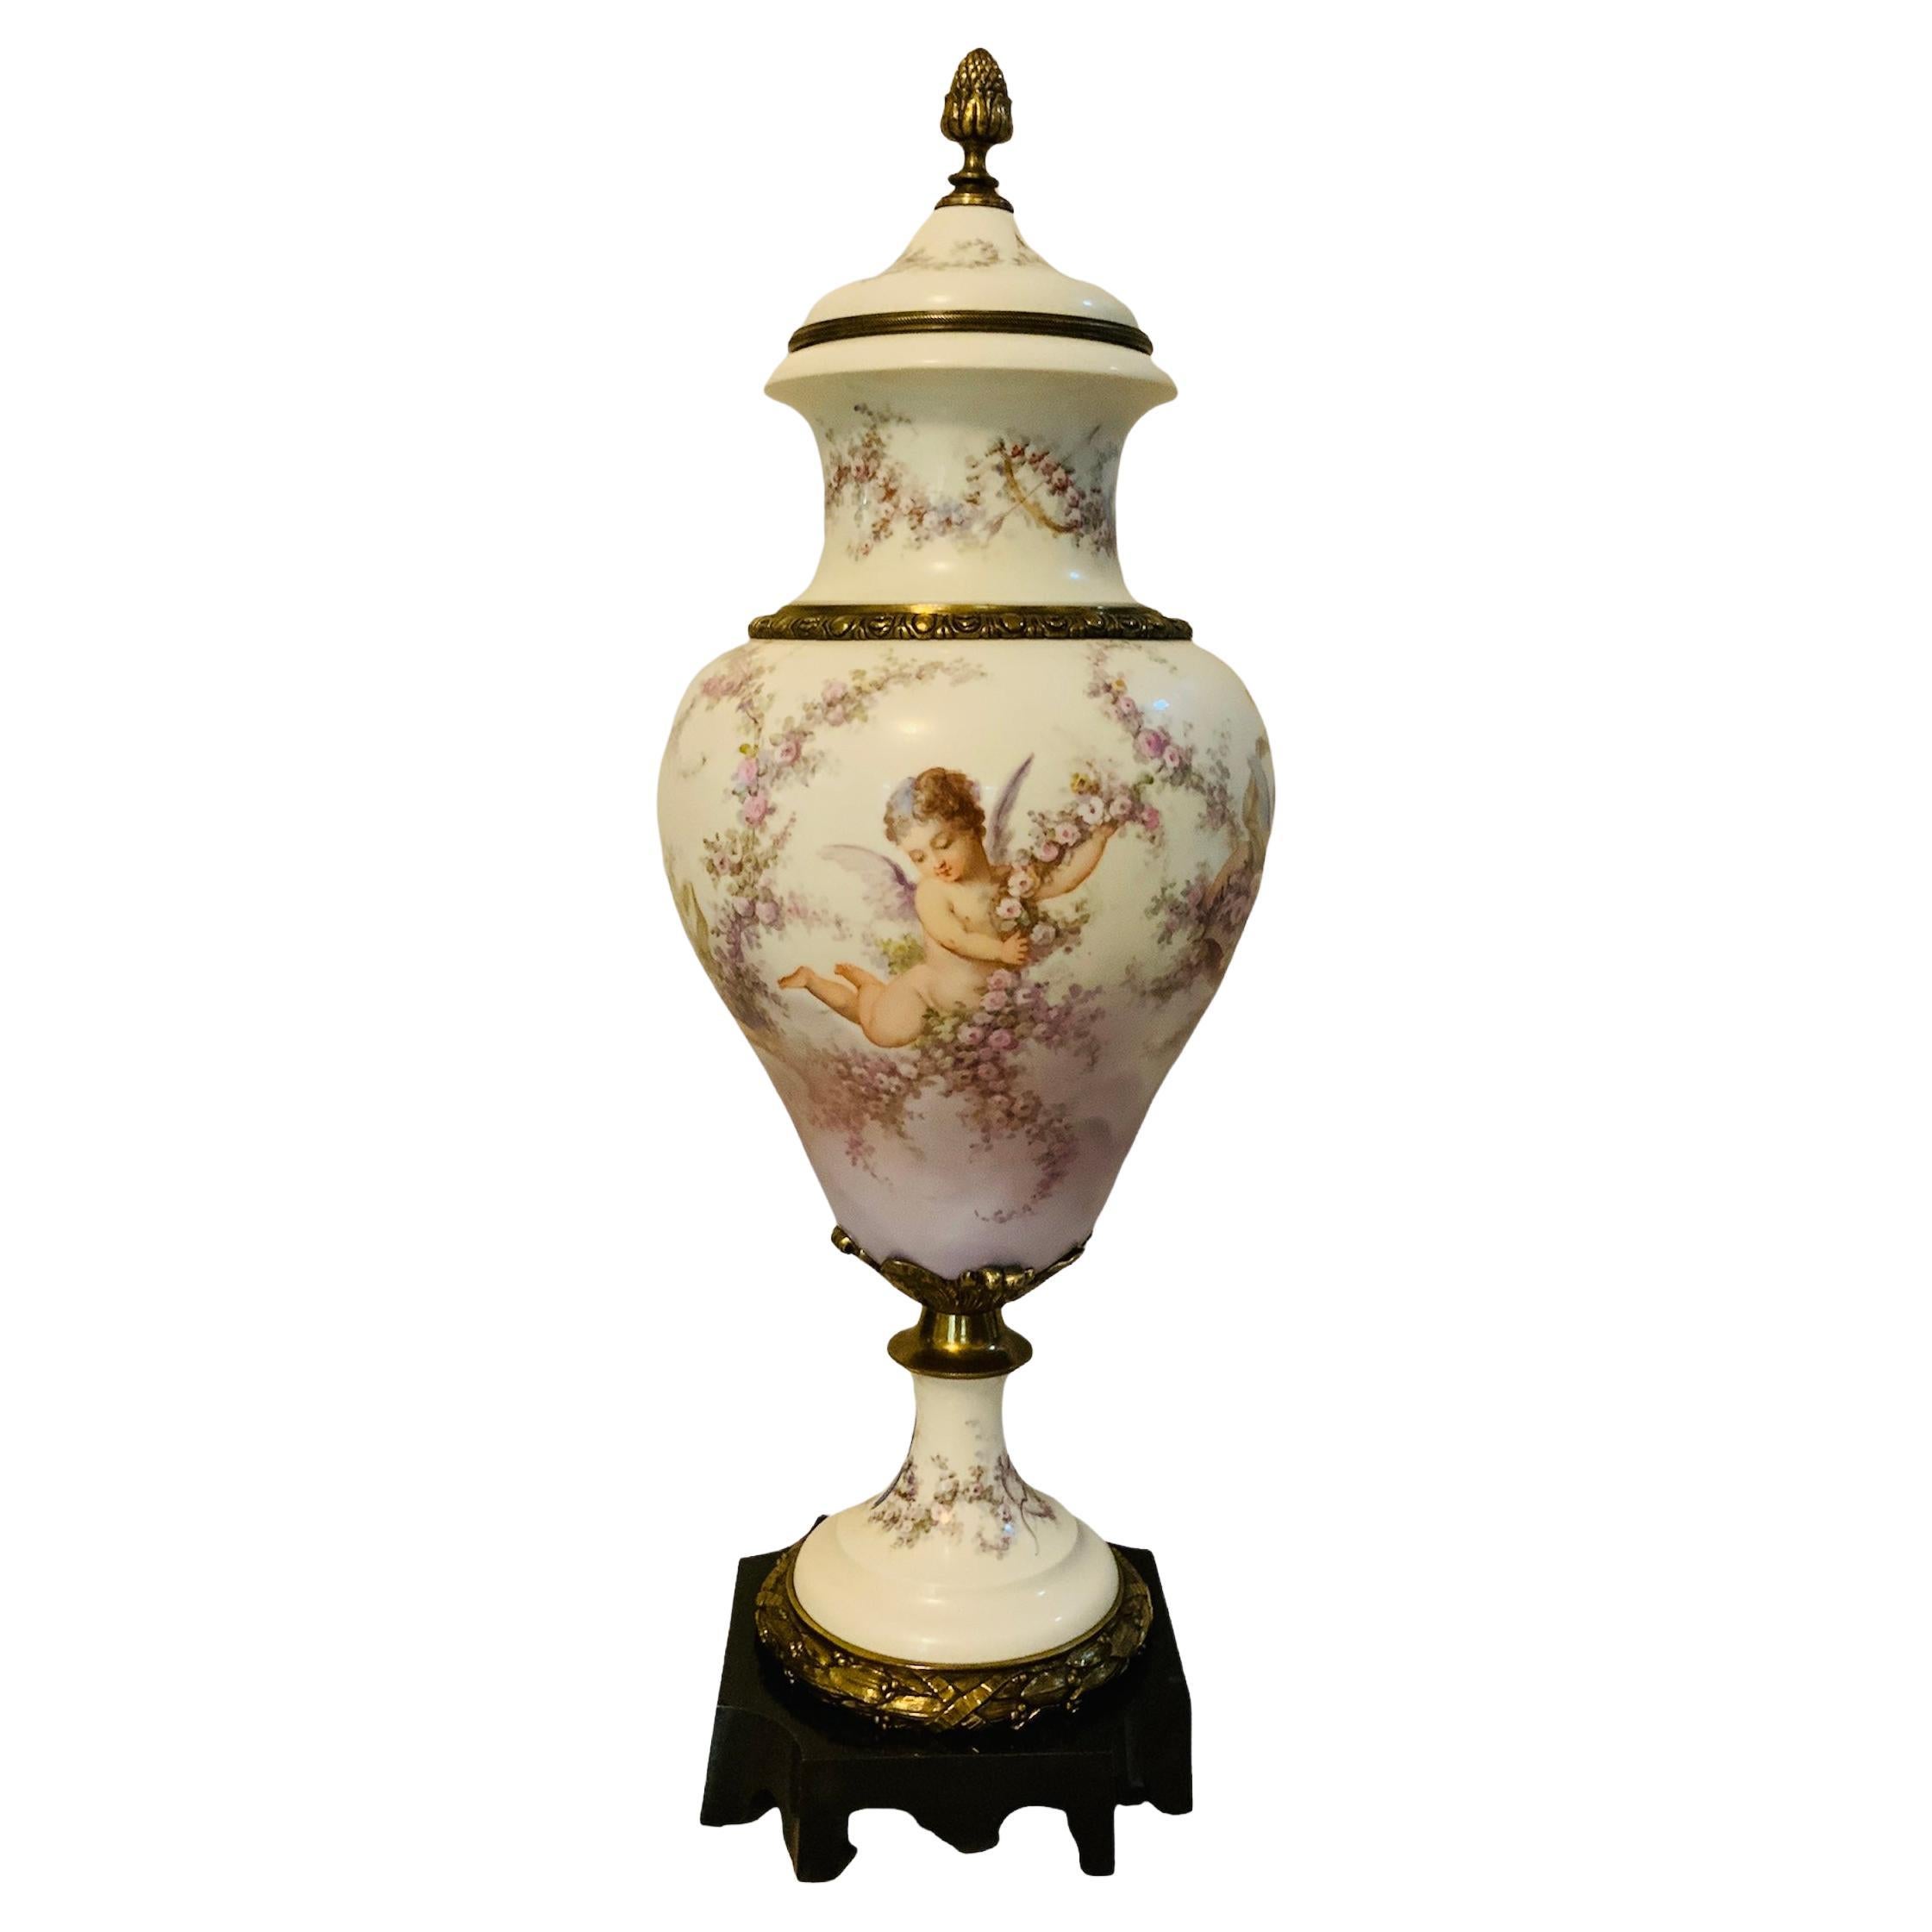 Grande urne à couvercle en porcelaine de Sèvres peinte à la main et montée sur bronze